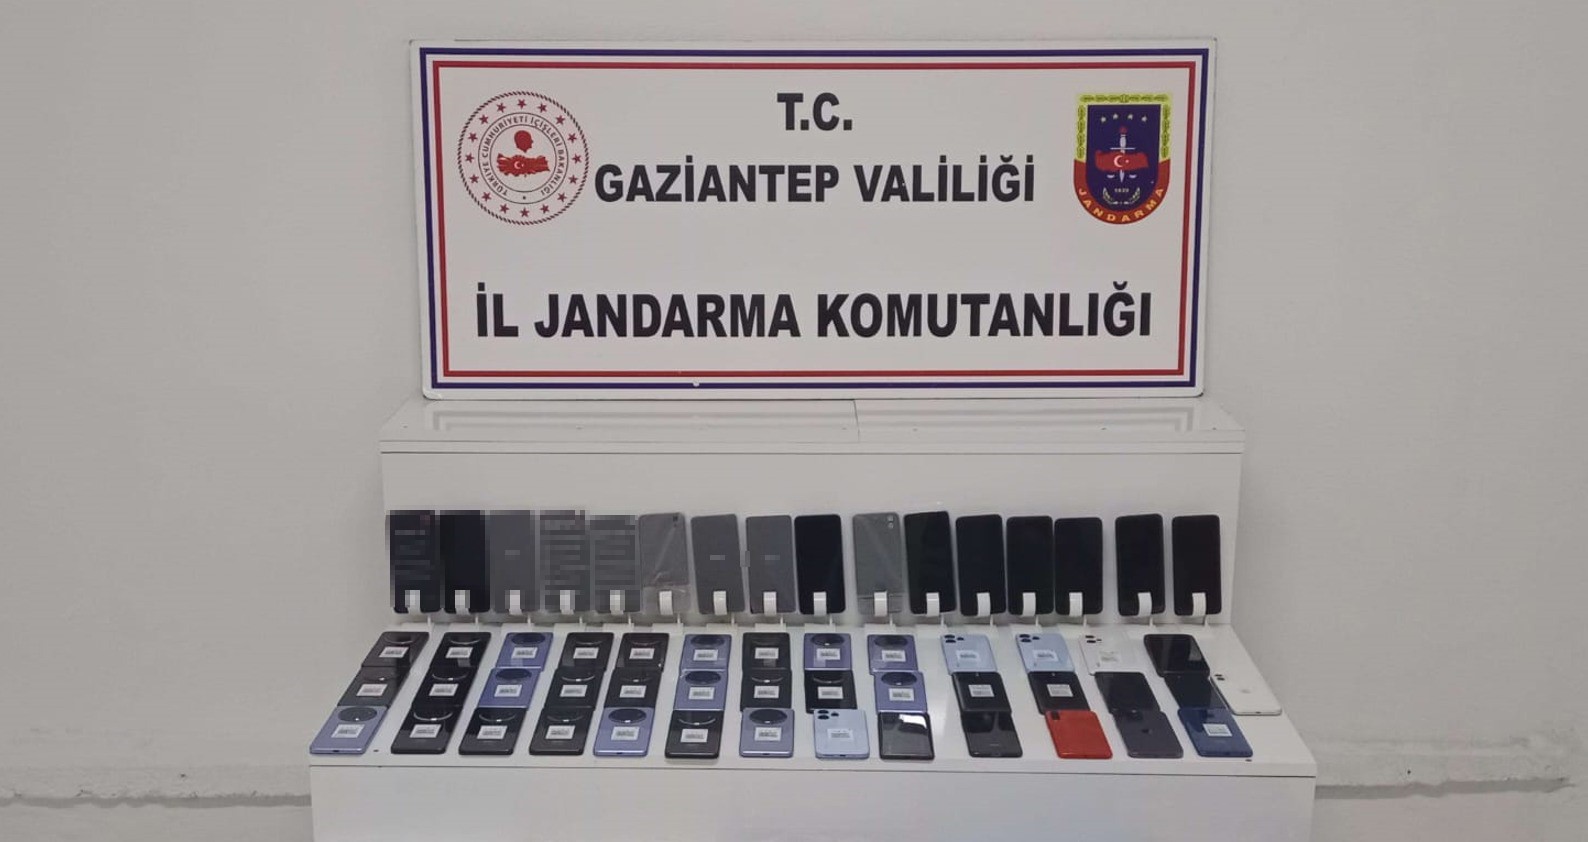 Gaziantep’te 2 milyon TL değerinde kaçak telefon ele geçirildi
